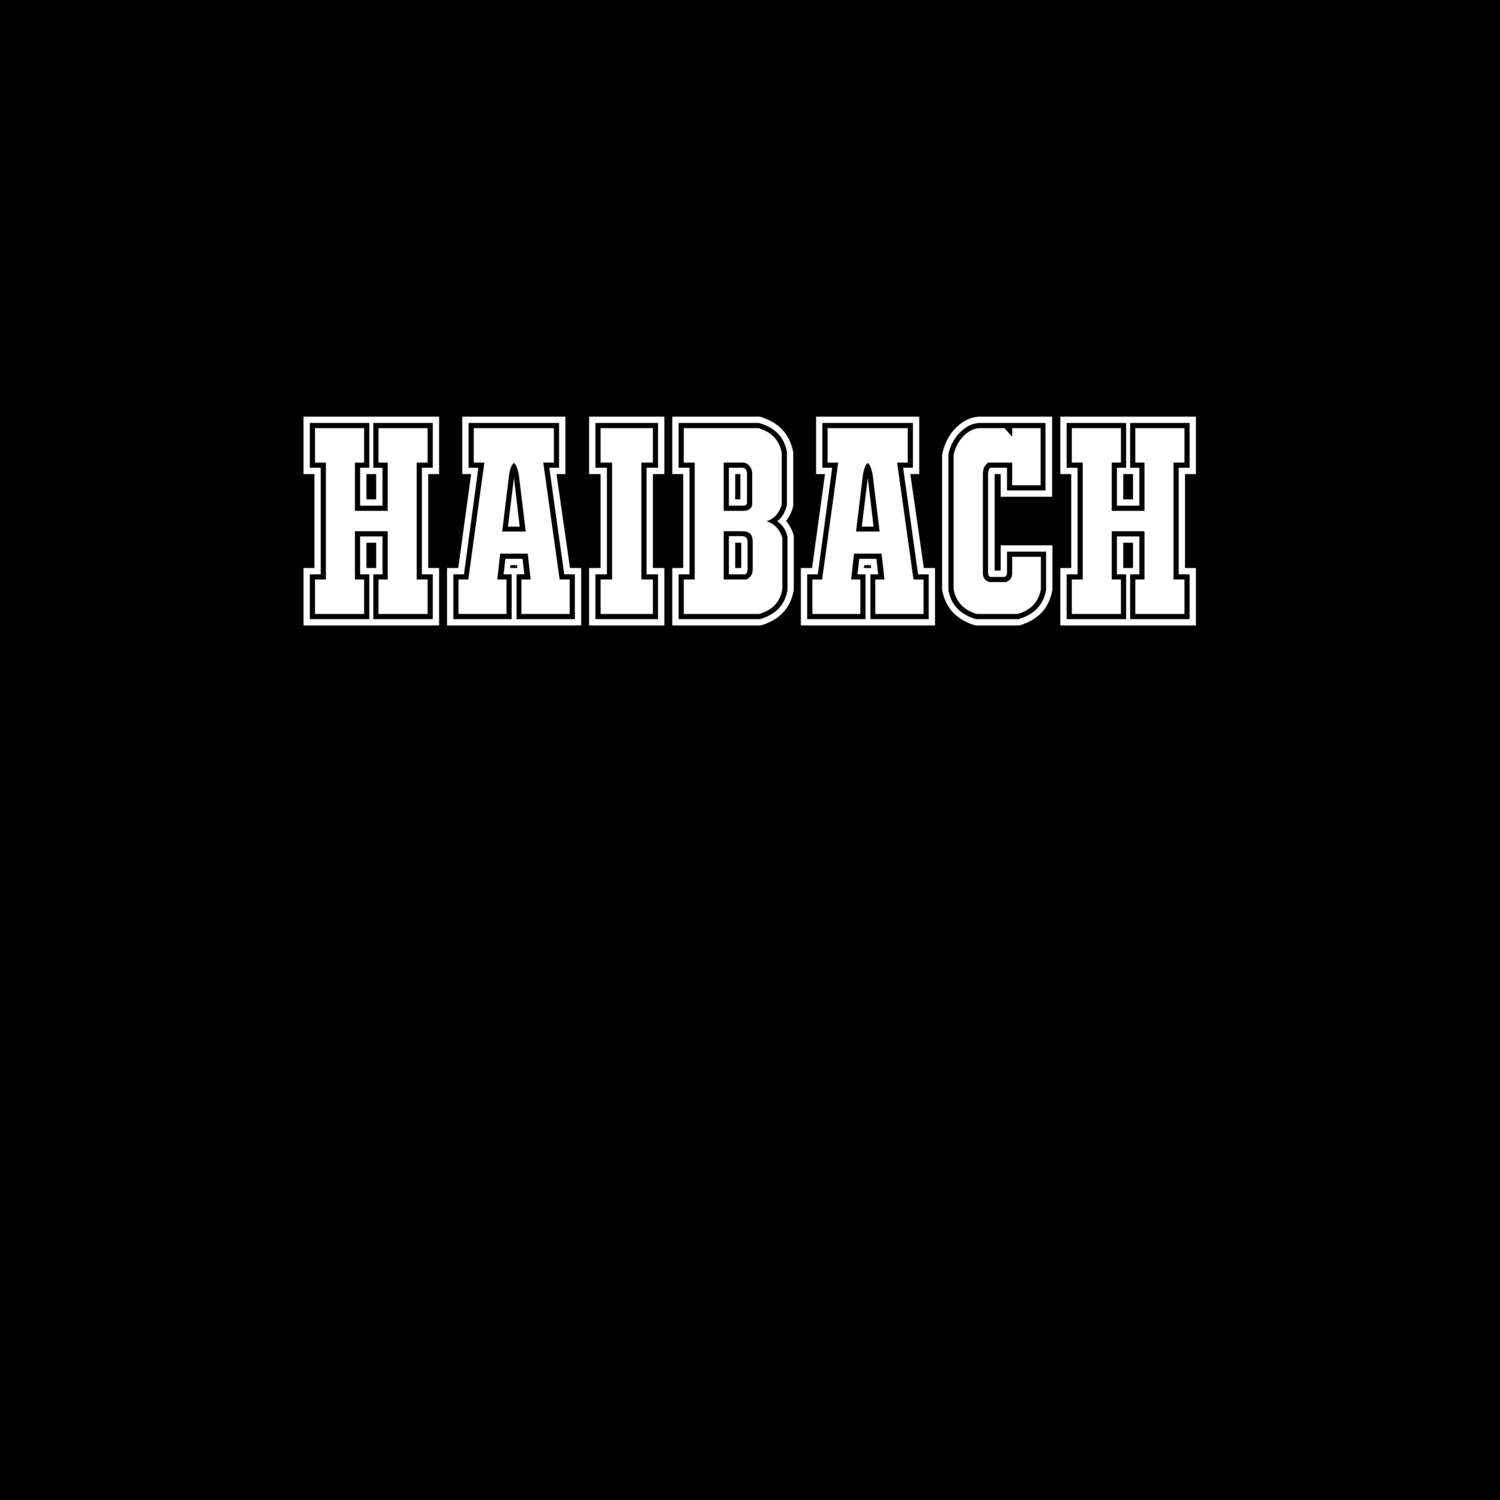 Haibach T-Shirt »Classic«